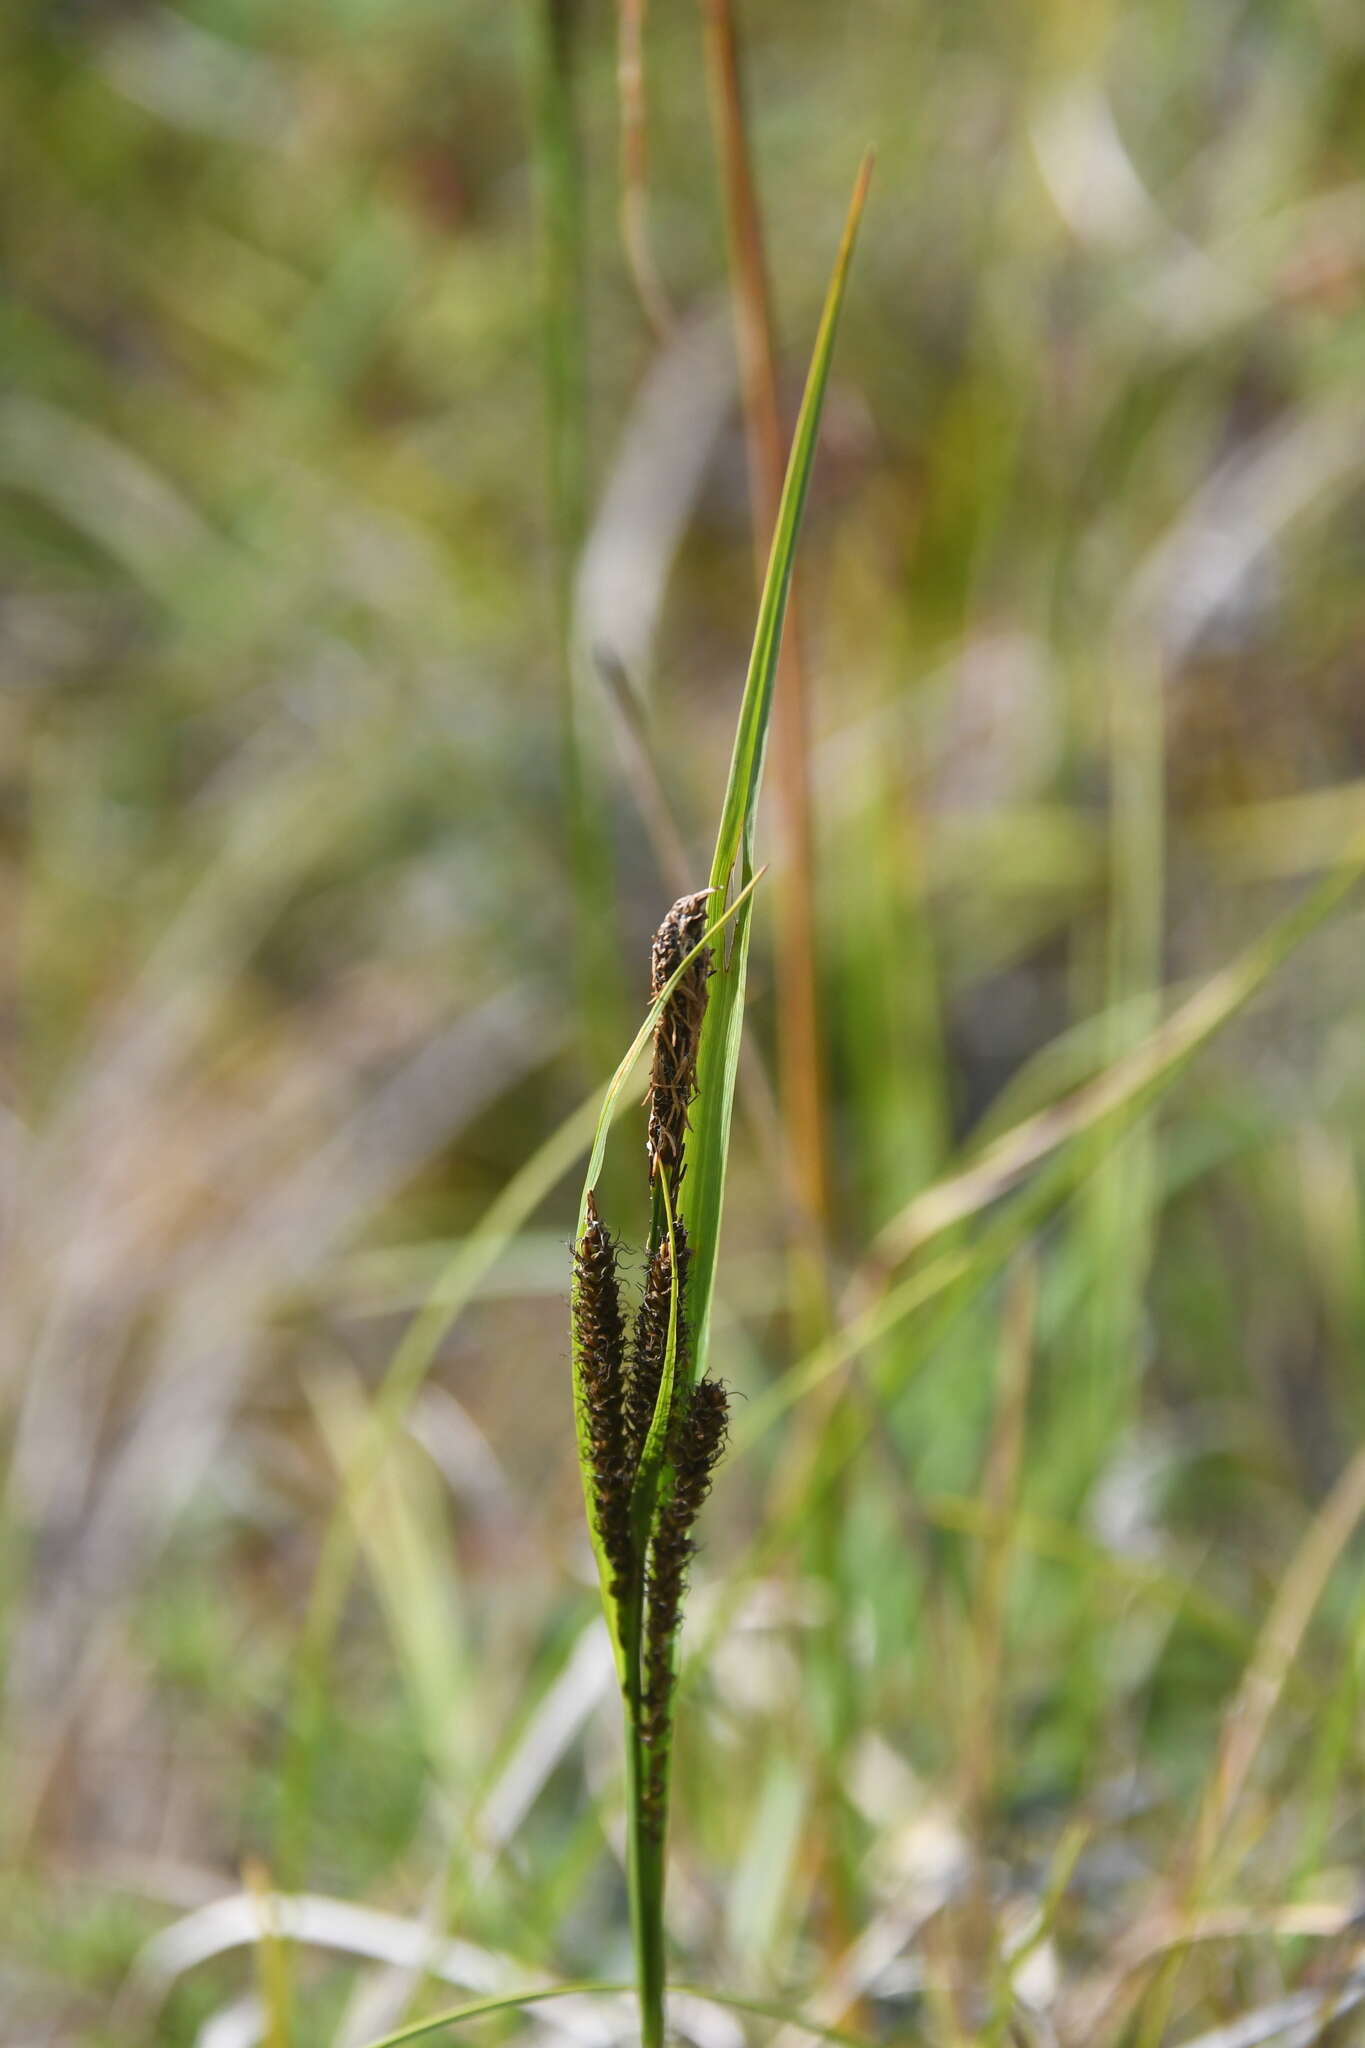 Image de Carex aquatilis var. minor Boott